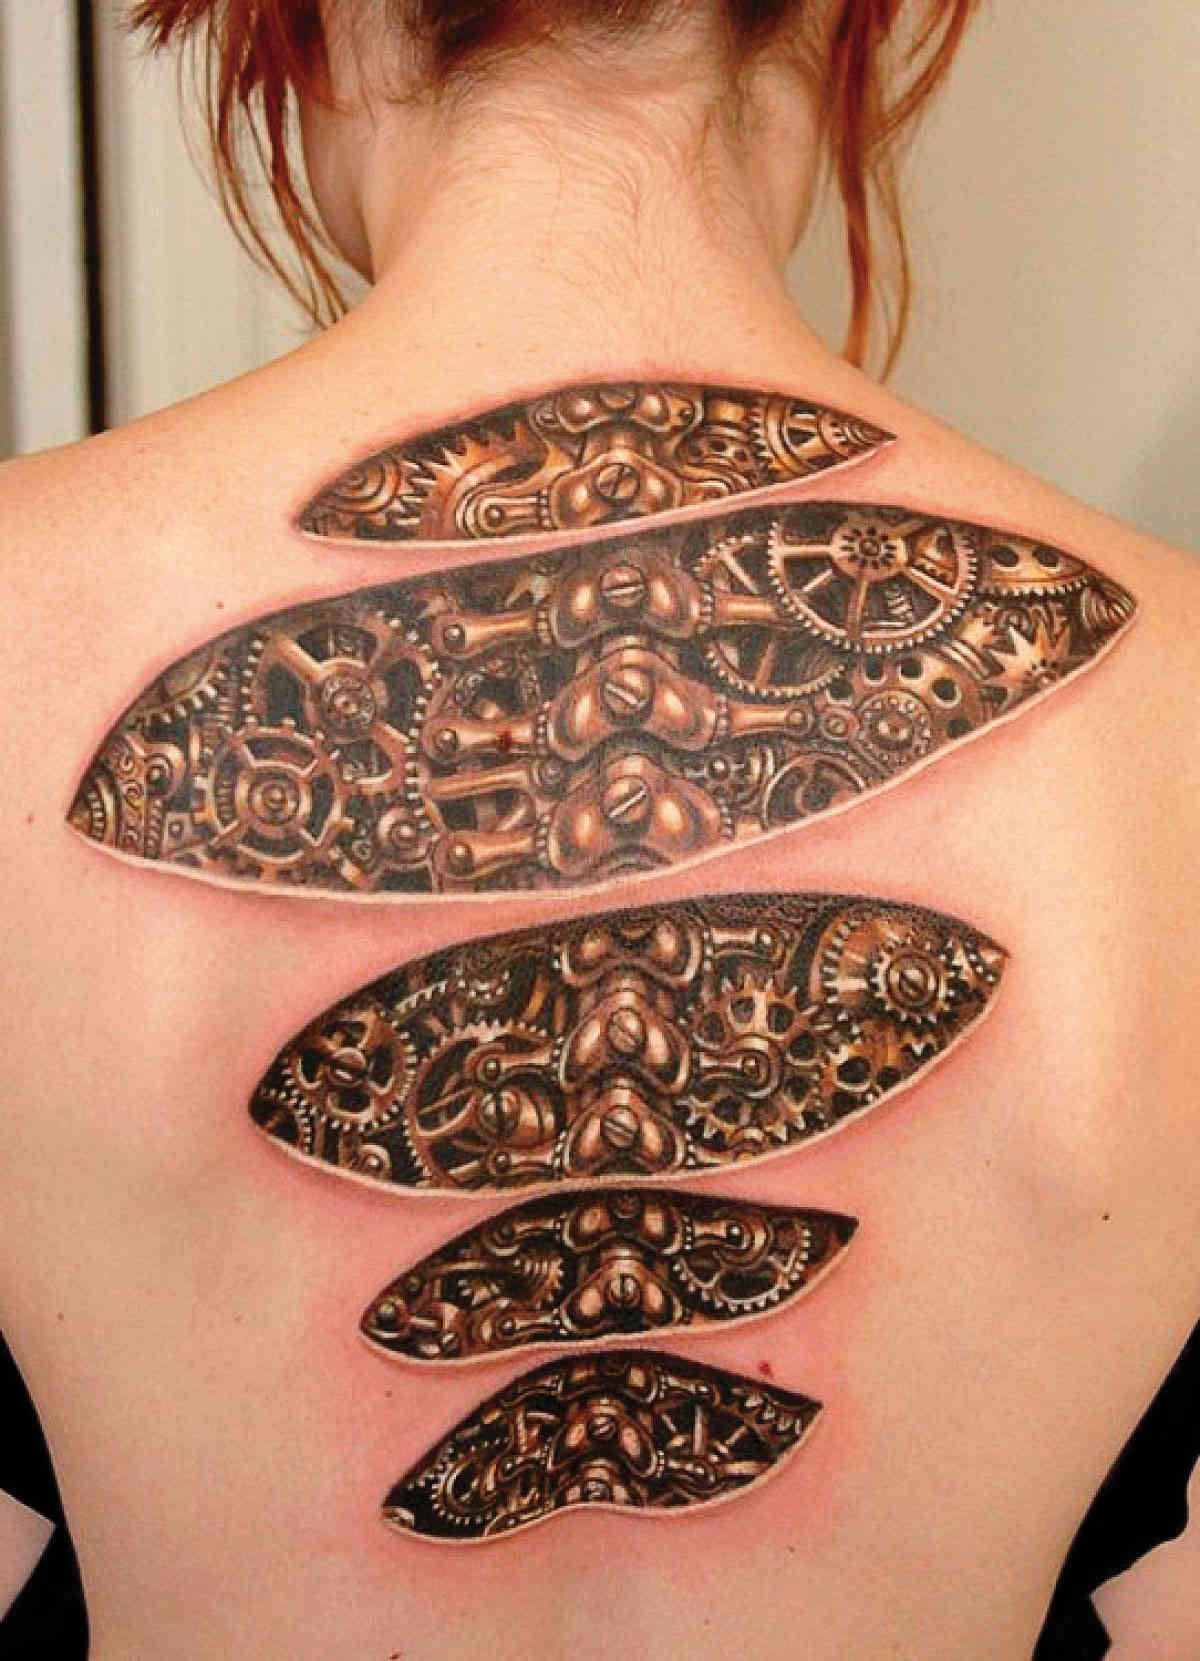 Los tatuajes más extraños del mundo